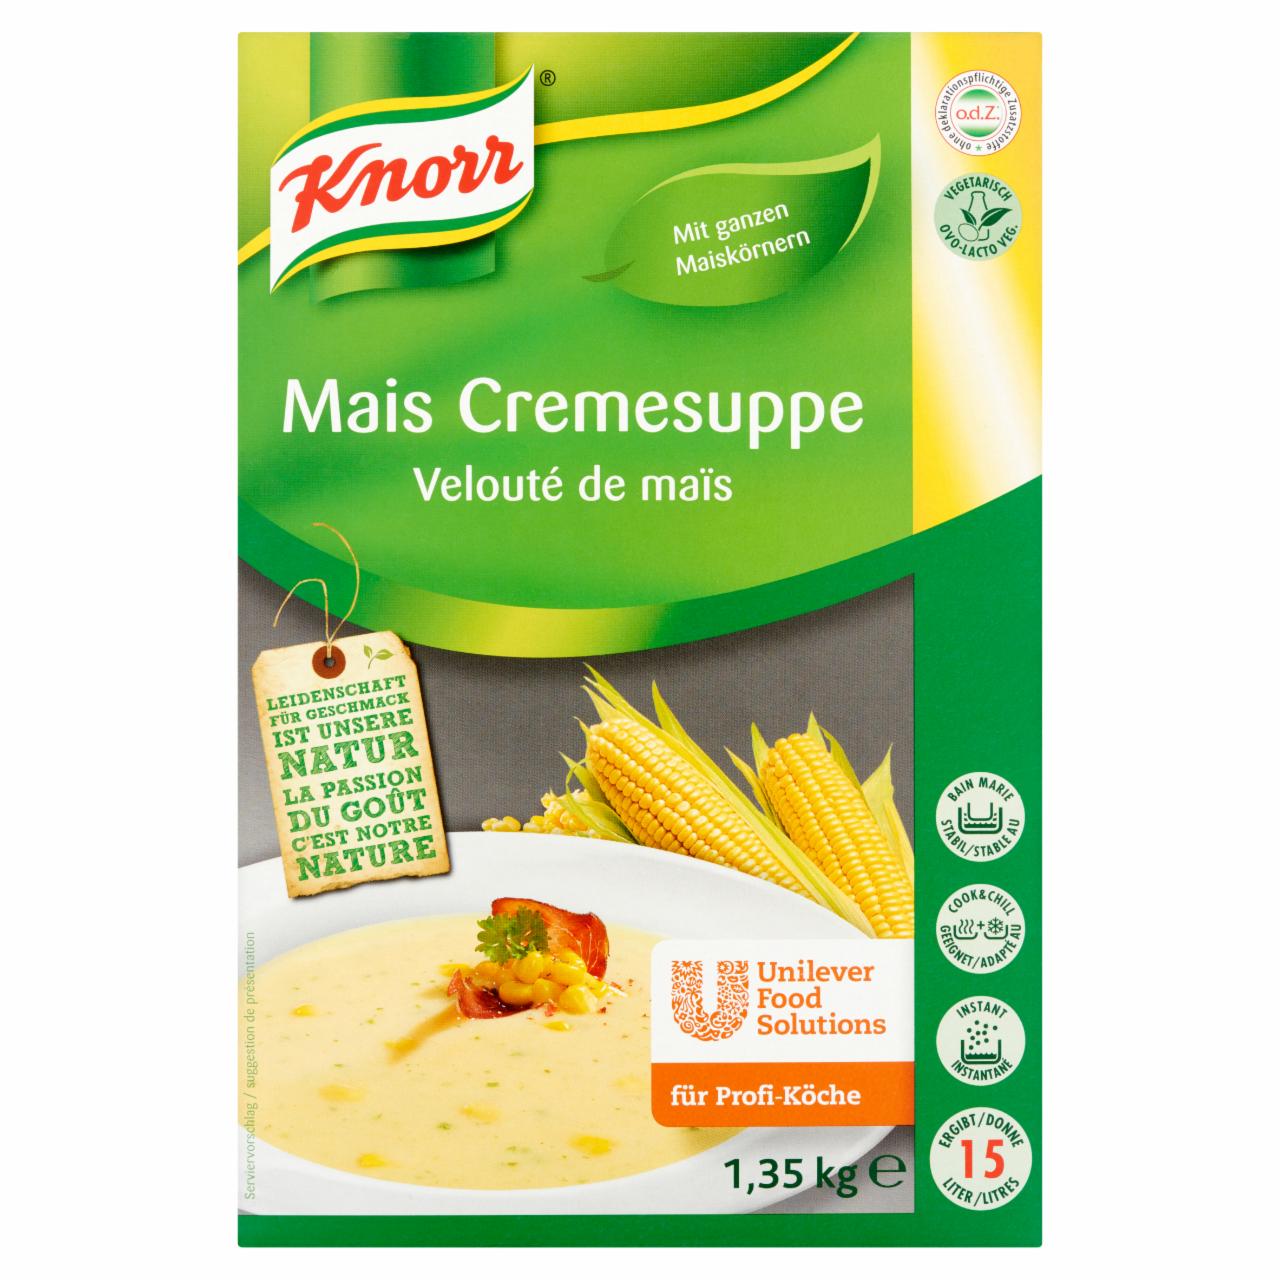 Képek - Knorr kukoricakrémleves 1,35 g